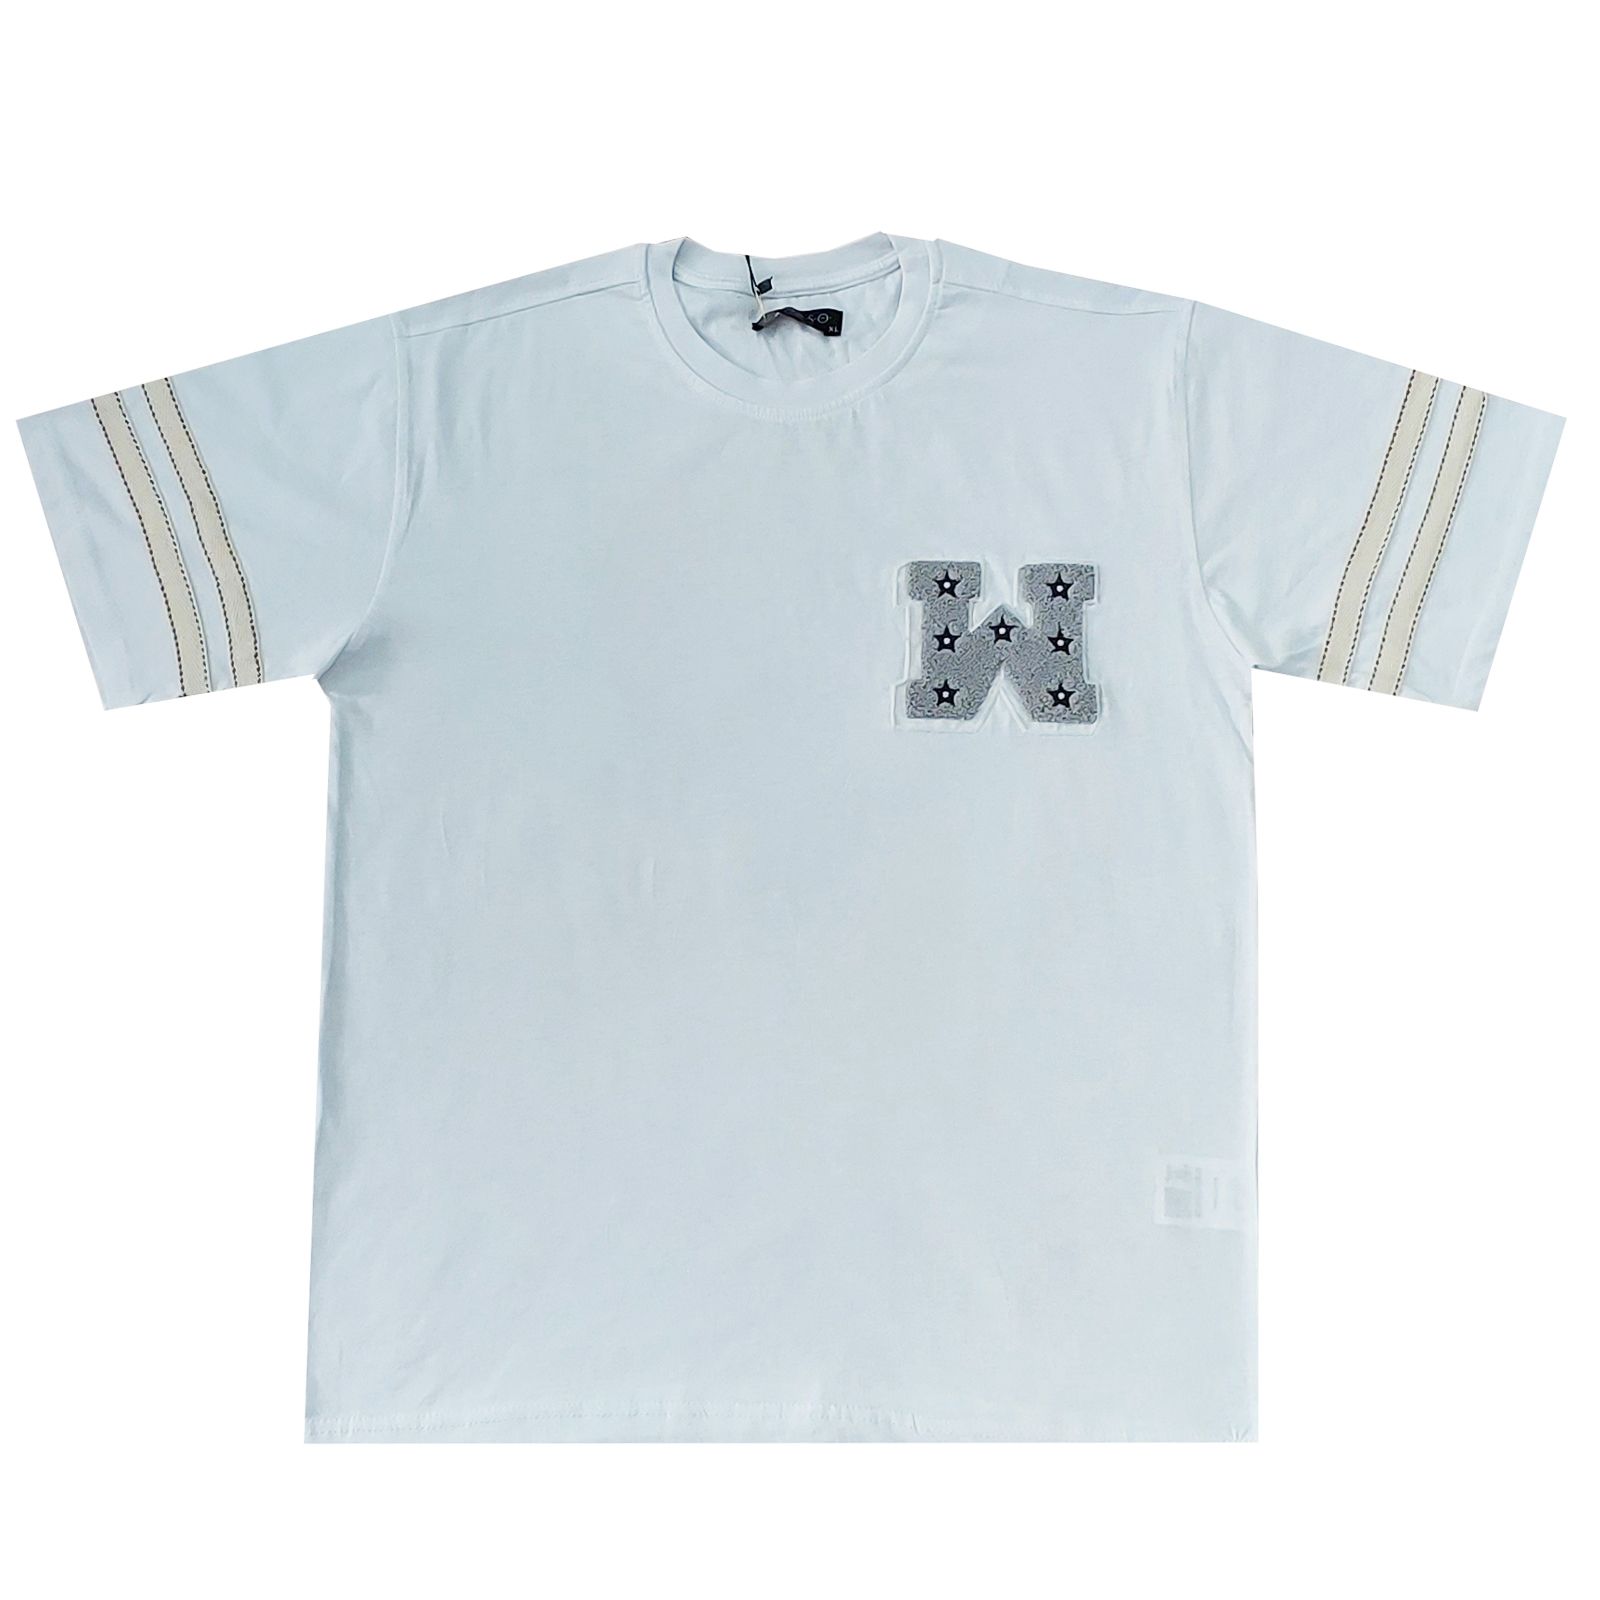 تی شرت آستین کوتاه مردانه مدل ROSSO کد abm2 -  - 2